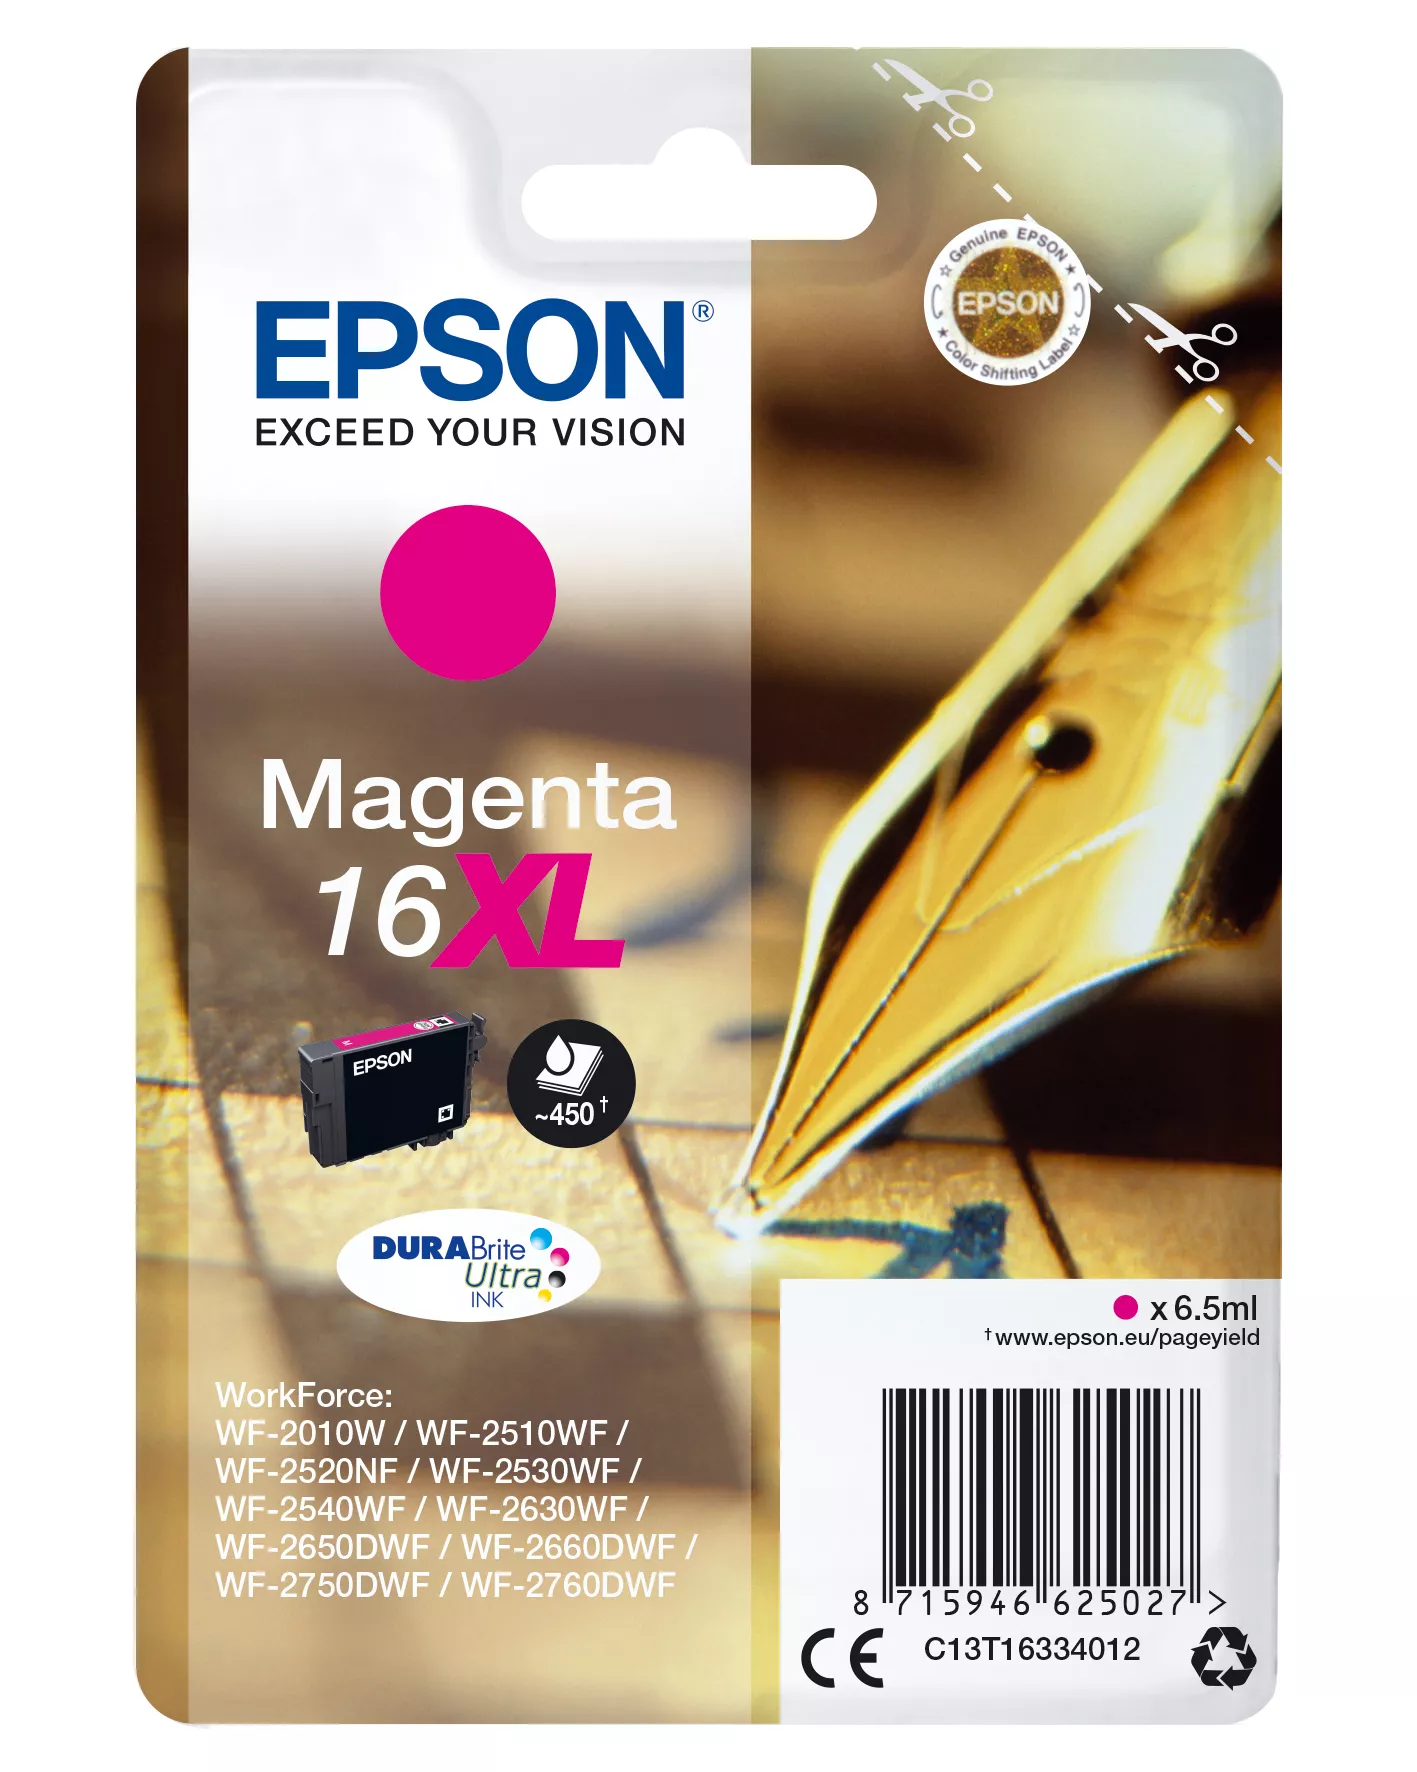 Achat EPSON 16XL cartouche dencre magenta haute capacité 6.5ml au meilleur prix